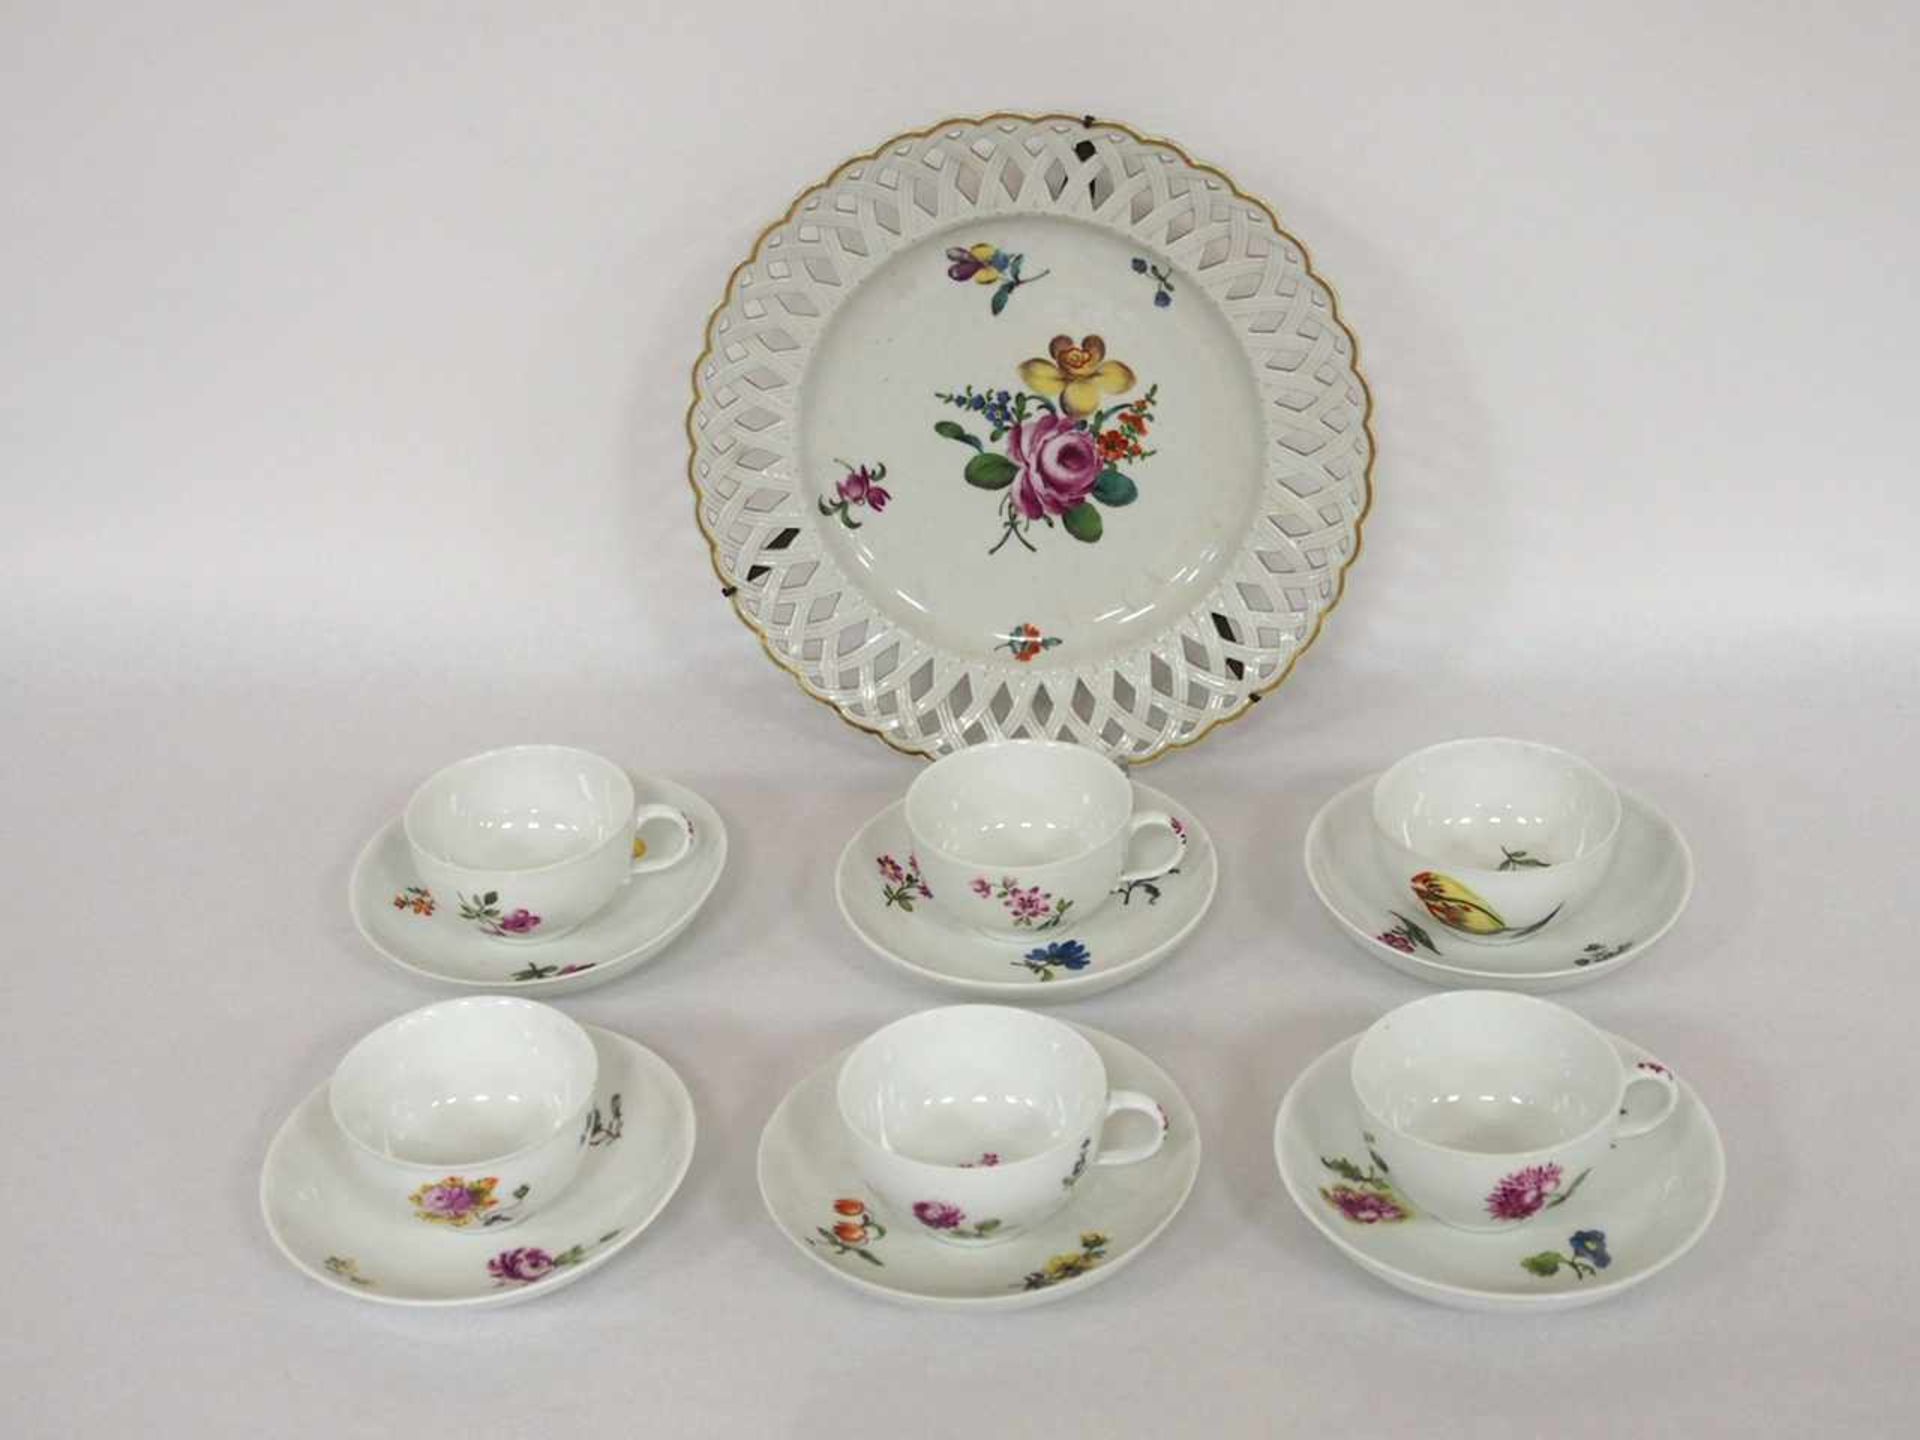 Vier Tassen, zwei Koppchen und sechs UntertassenPorzellan, Blumenmalerei, Meissen 18. Jahrhundert,